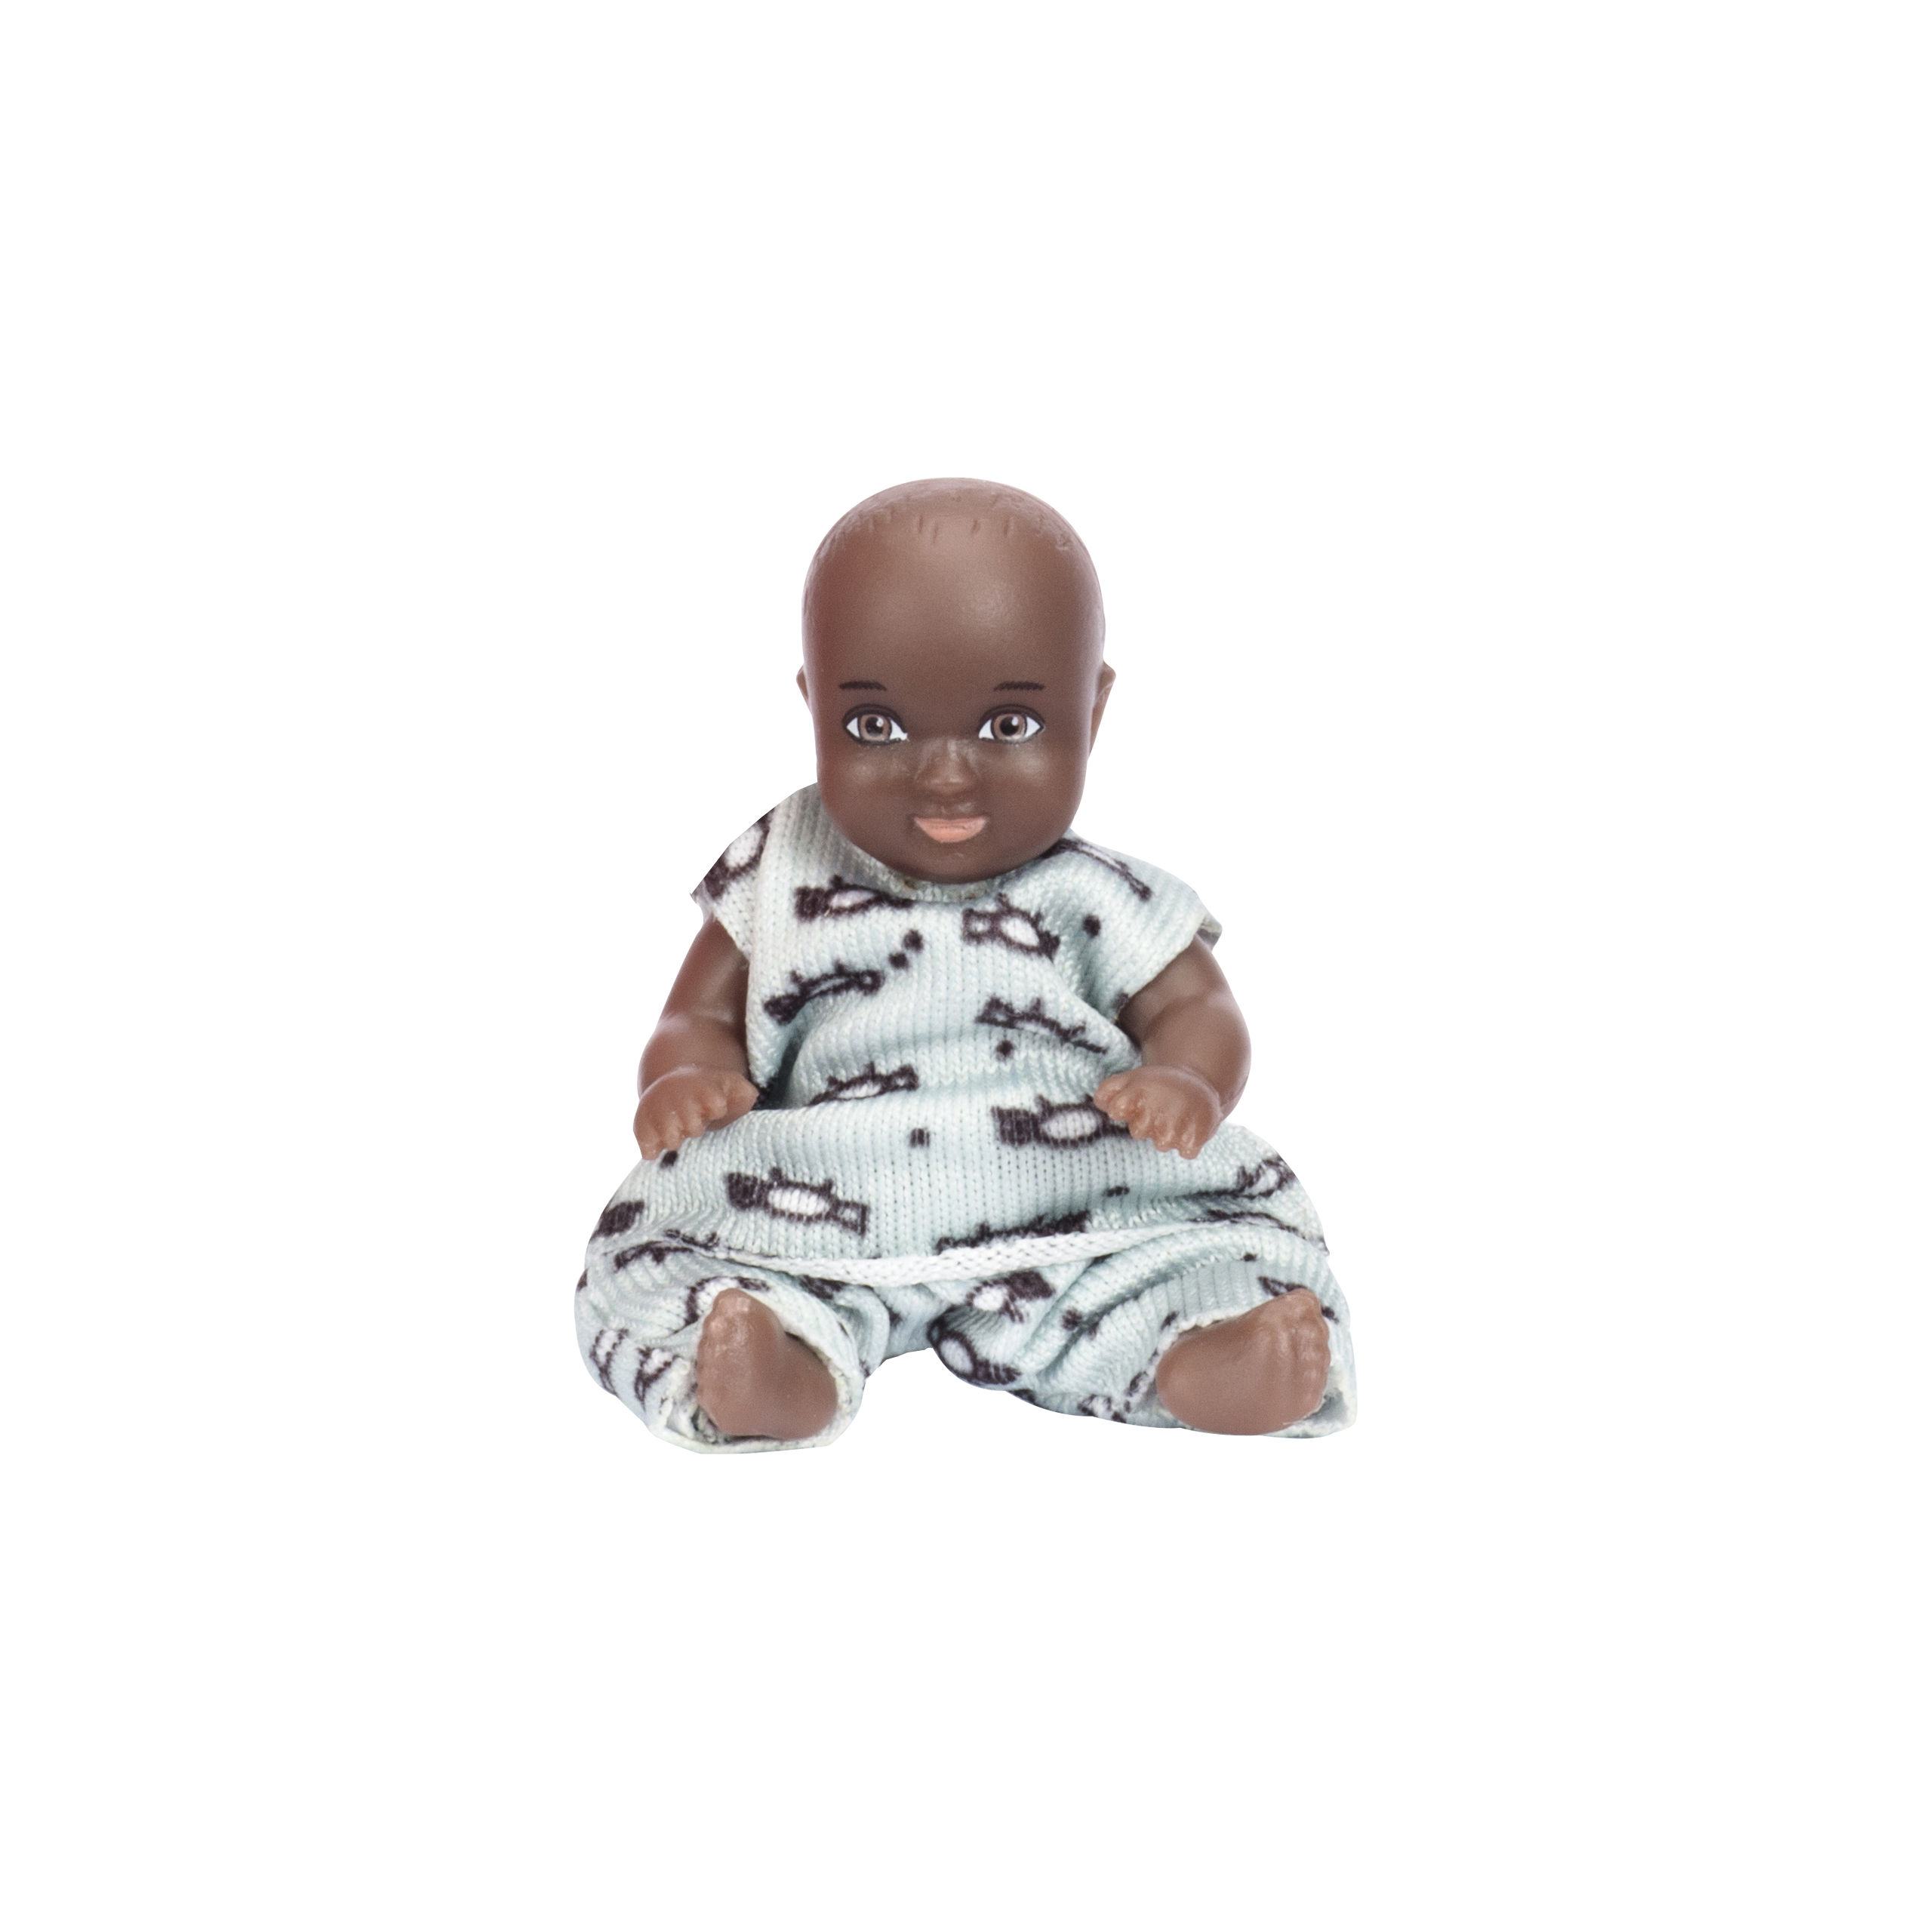 Dark-skinned dolls lundby dollhouse doll billie baby